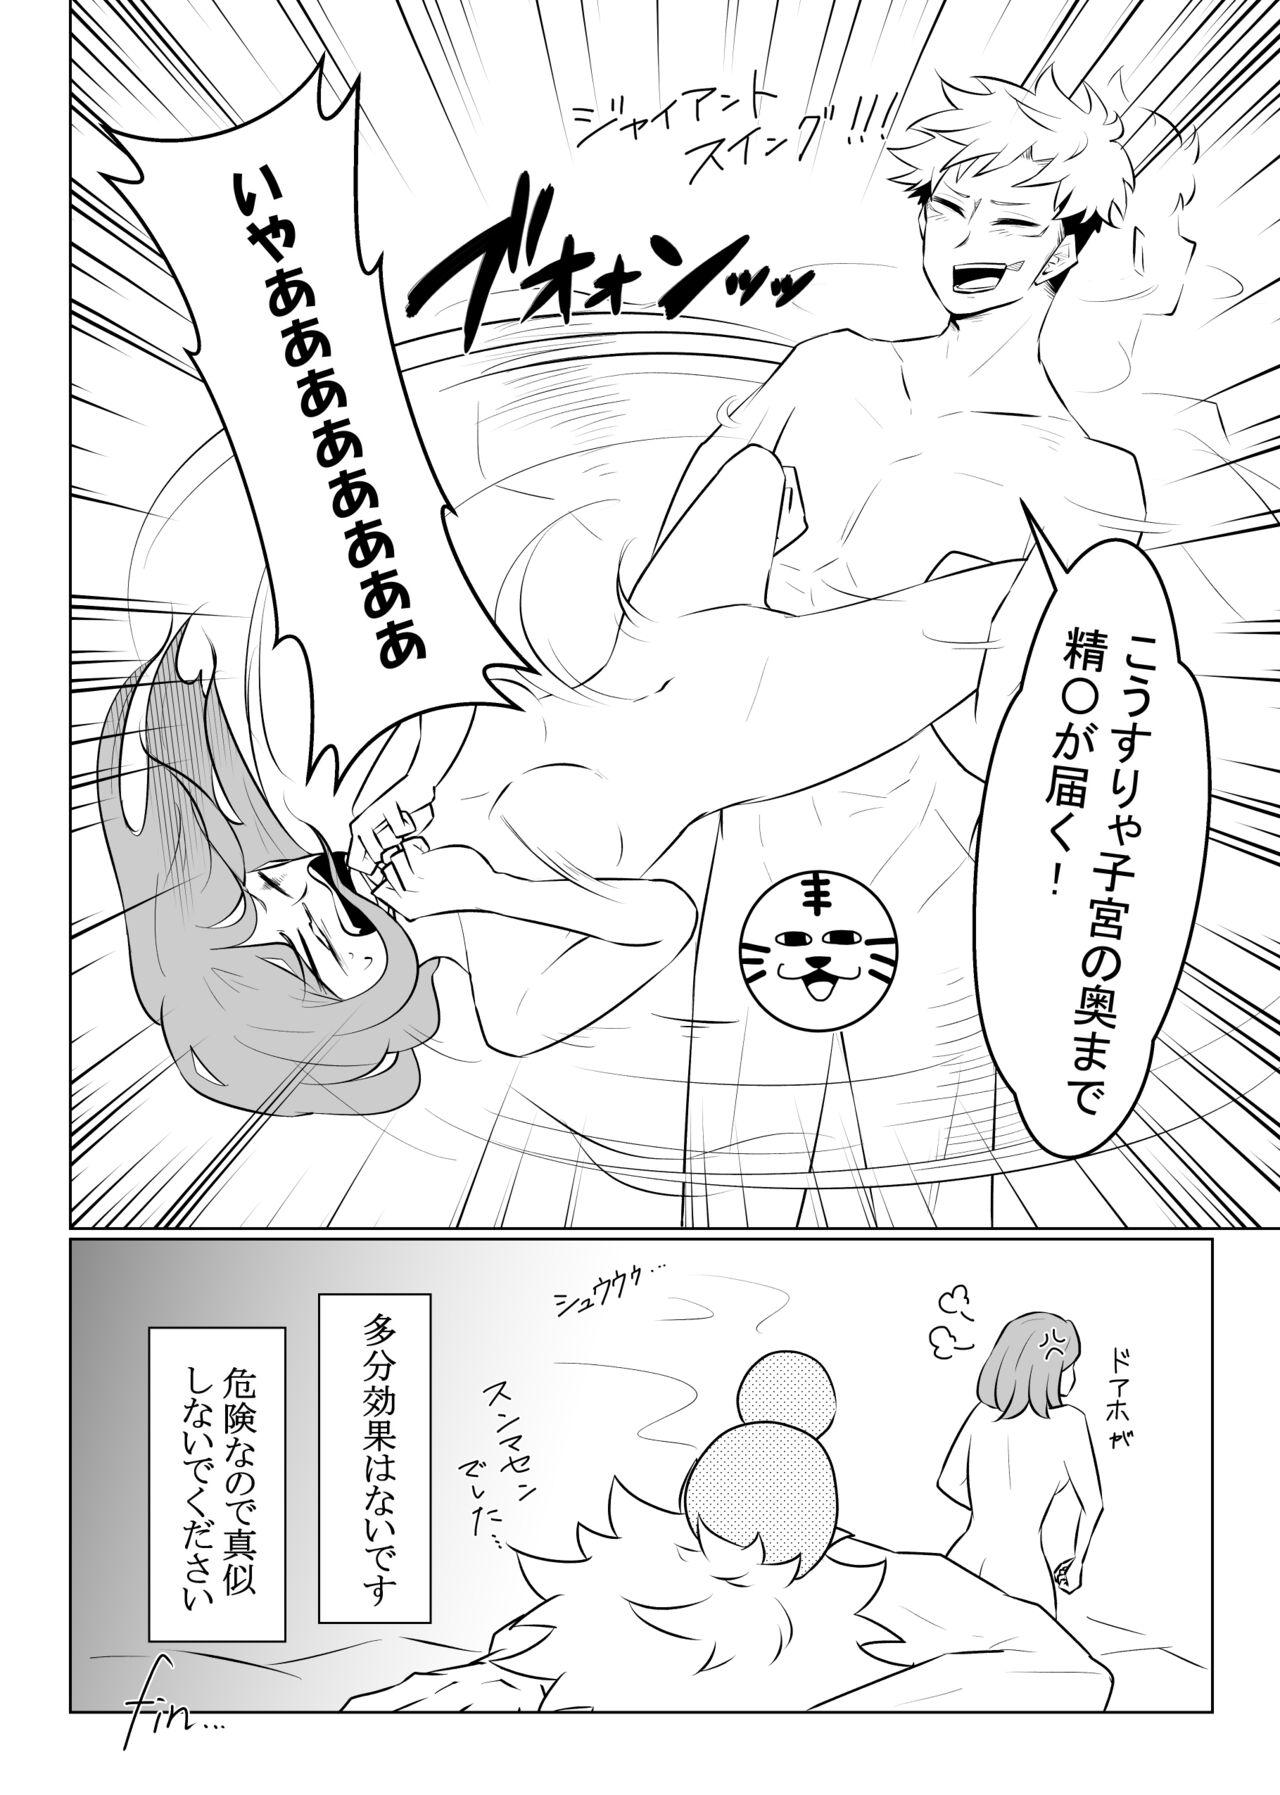 Gayfuck Enshinryoku - Jujutsu kaisen Reality - Page 7